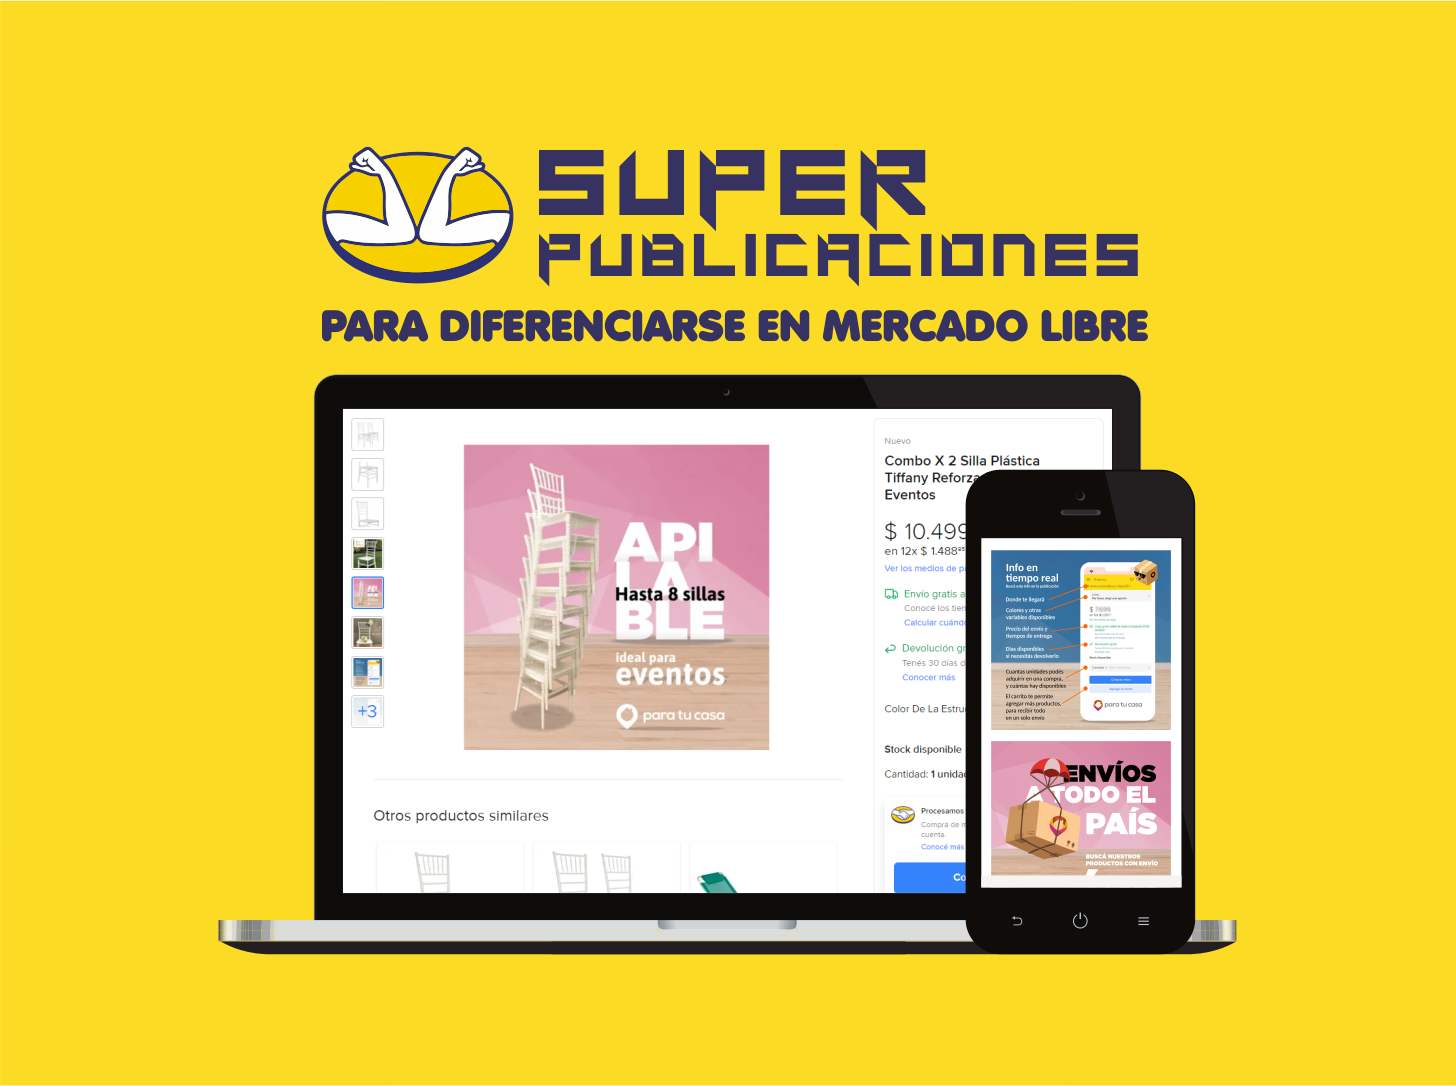 SUPER PUBLICACIONES EN MERCADO LIBRE